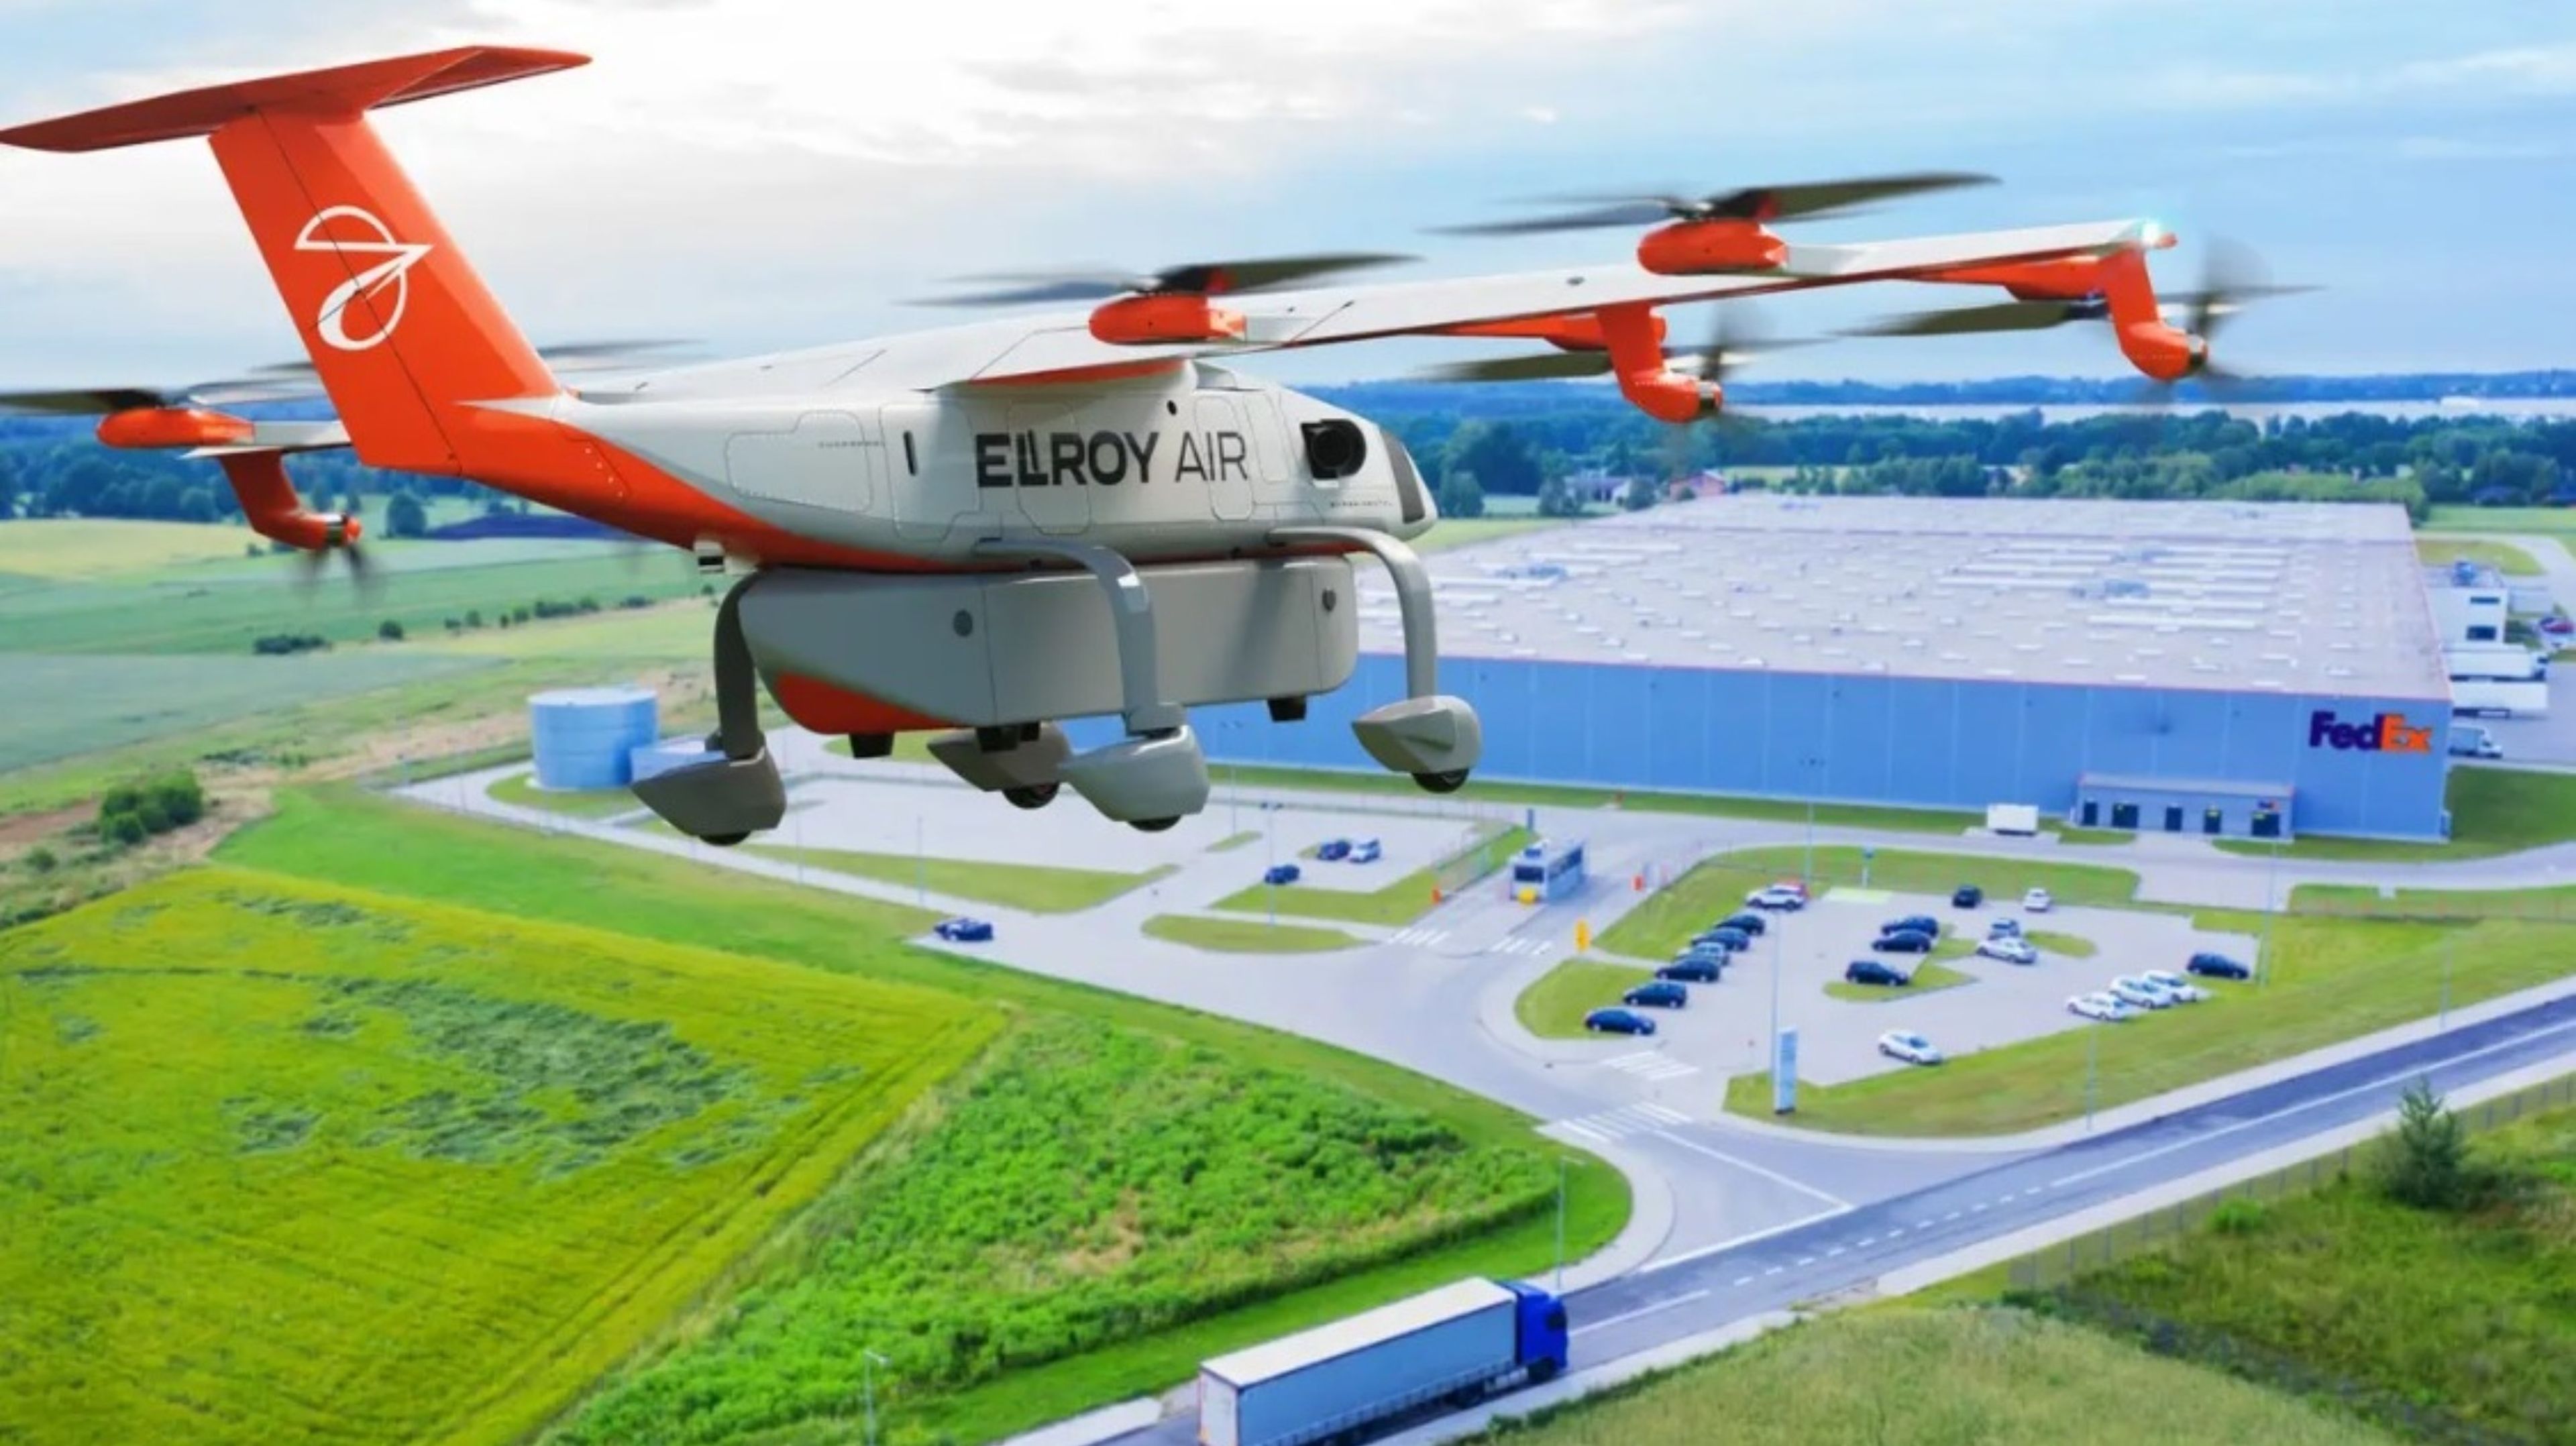 FedEx Express tiene previsto probar el sistema autónomo de carga aérea Chaparral de Elroy Air para trasladar los envíos entre los centros de clasificación.